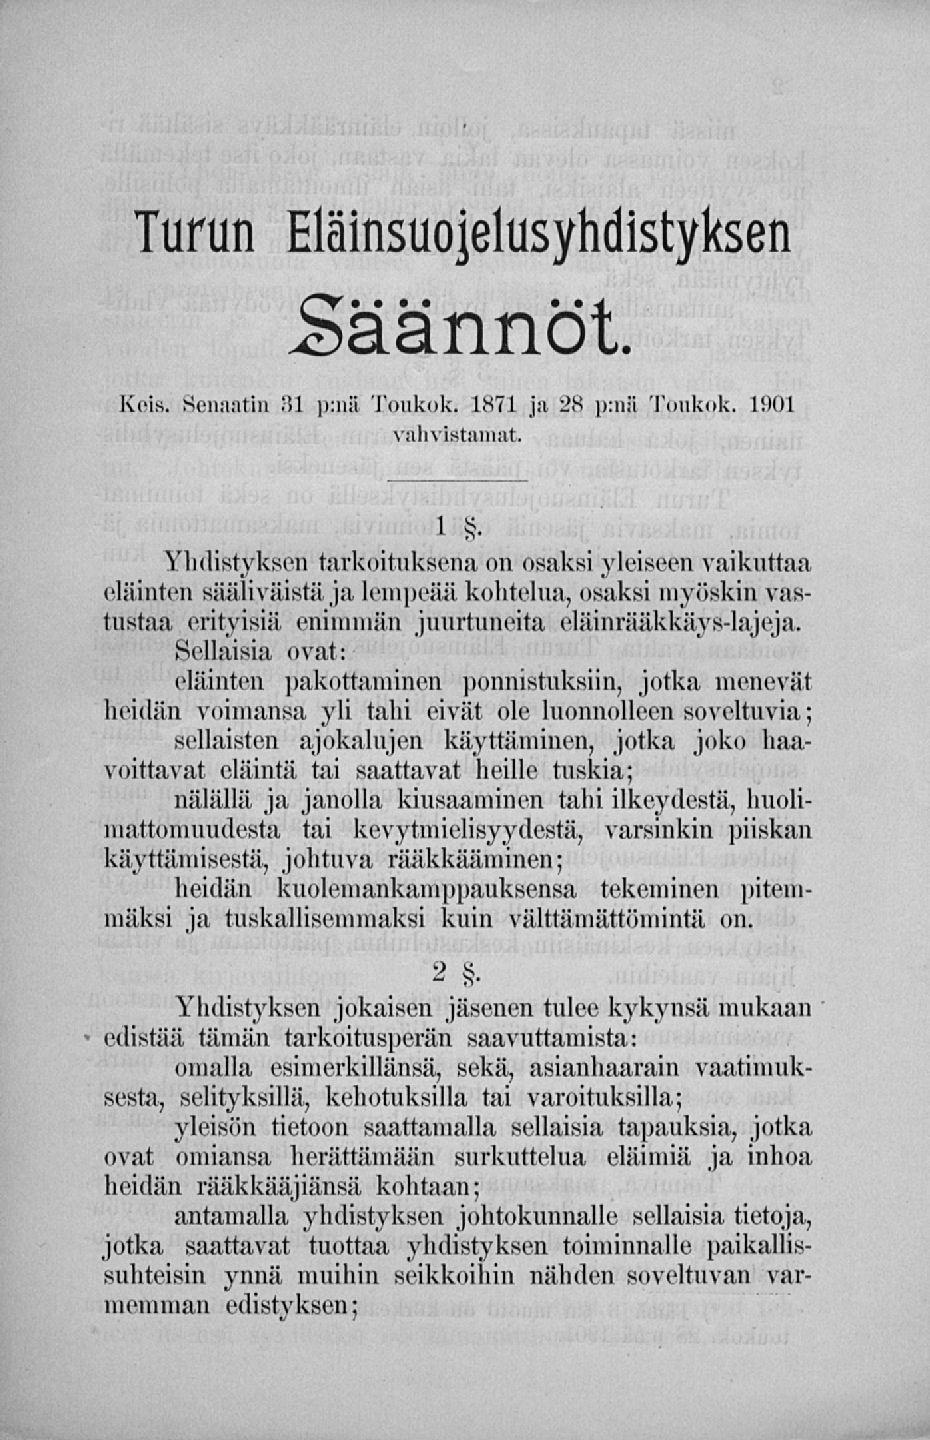 Turun Eläinsuojelusyhdistyksen Säännöt. Kds. Senaatin i!l p;nb Toukok. 1871 ja 28 p:nß Toukok. 1901 vahvistamat.